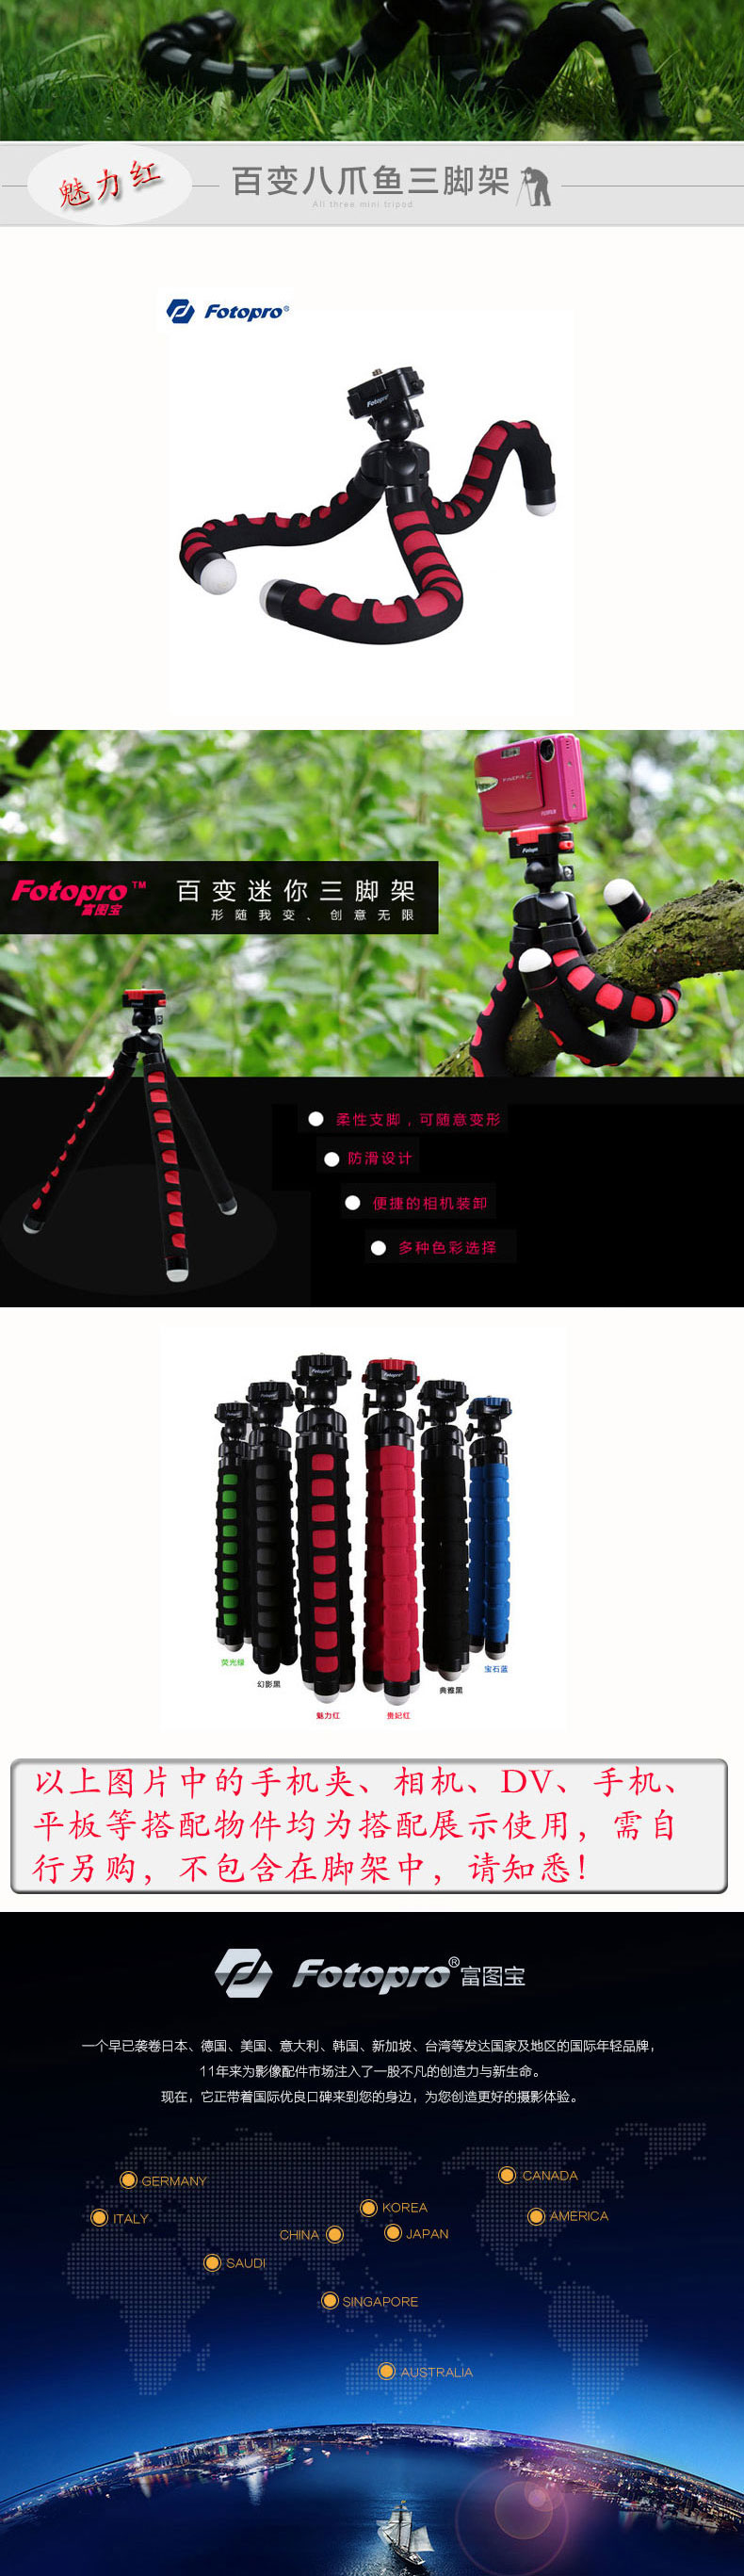 富图宝(Fotopro) RM-100 幻影黑 便携八爪鱼懒人相机手机支架创意三脚架手机支架